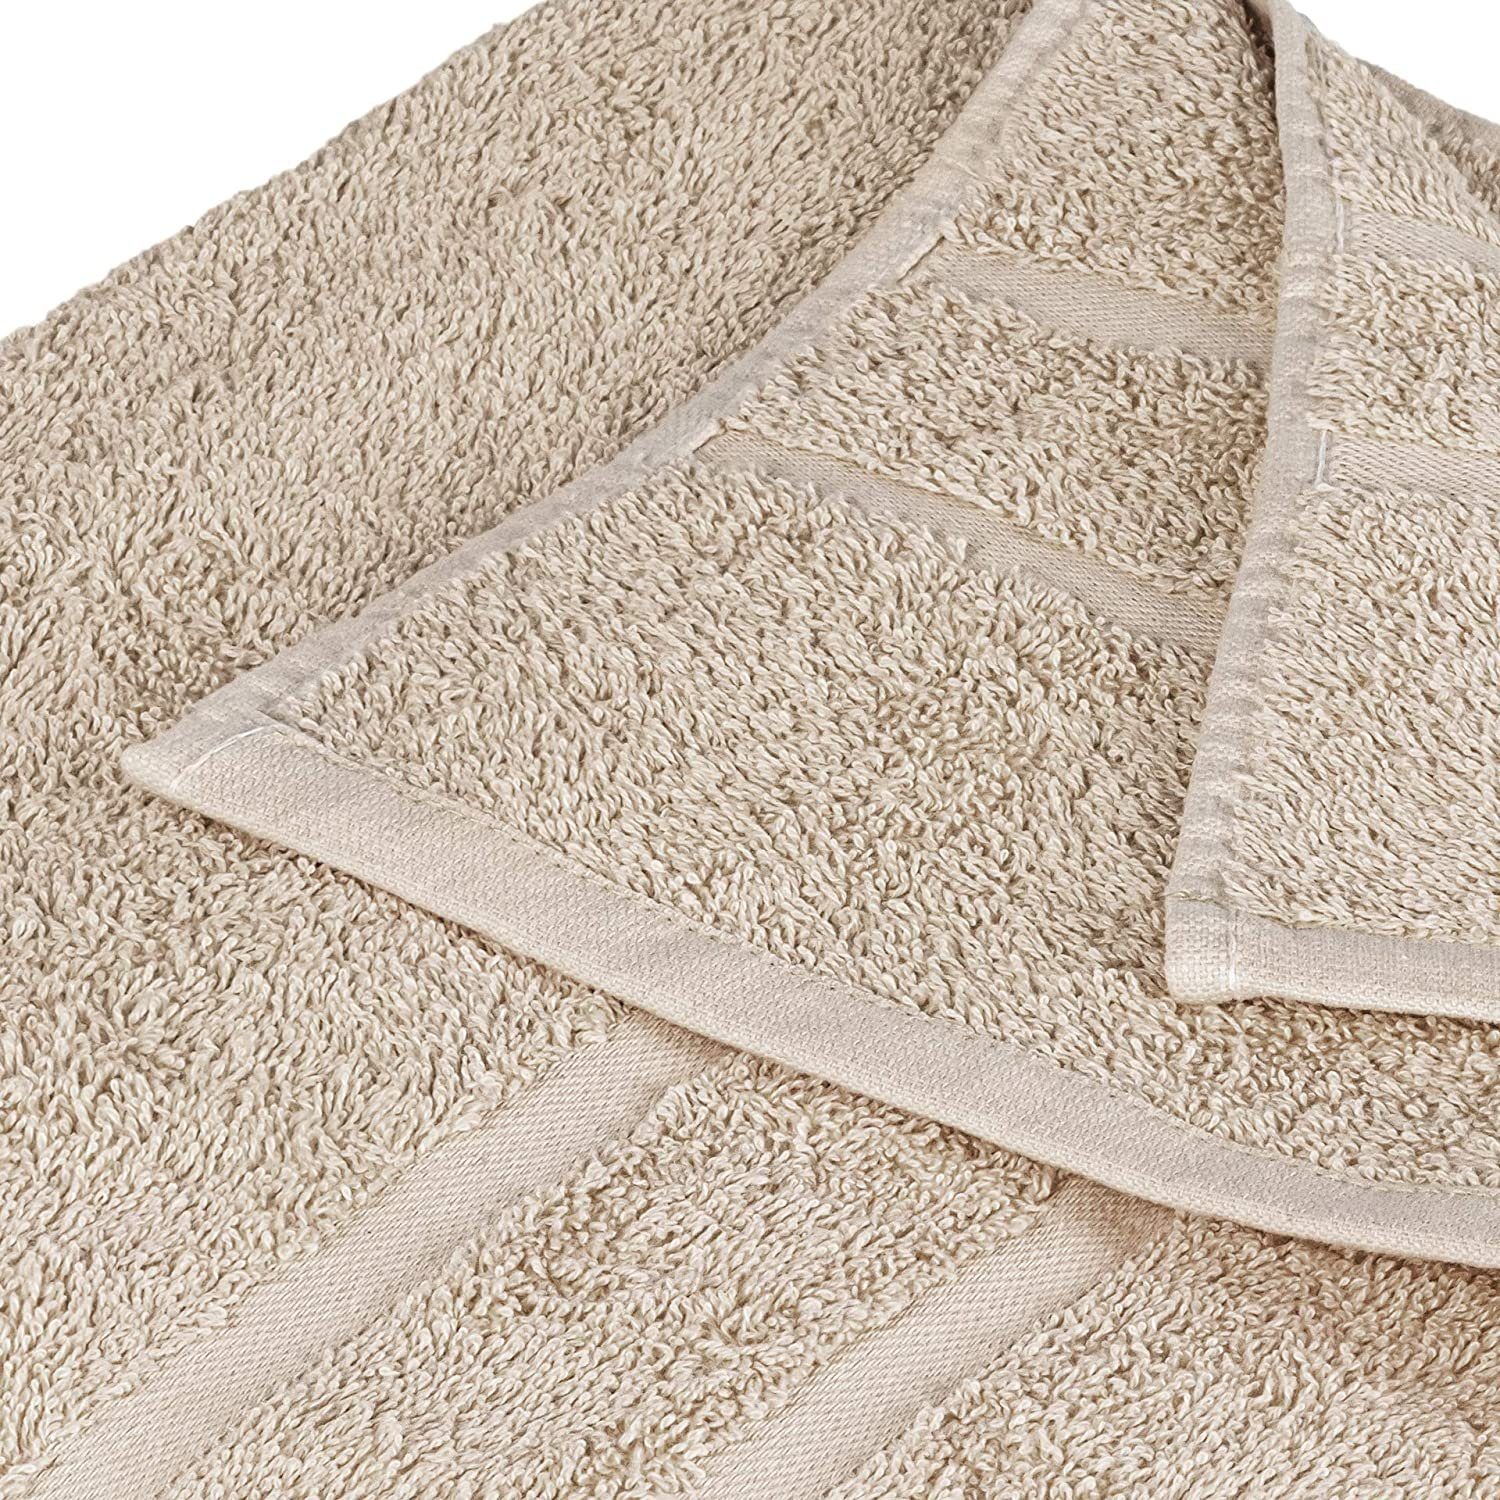 StickandShine Handtuch Frottee 100% Baumwolle in Sand Set 100% aus Premium Handtuch Baumwolle 500g/m² cm 2er 50x100 Frottee Stück), (2 500GSM